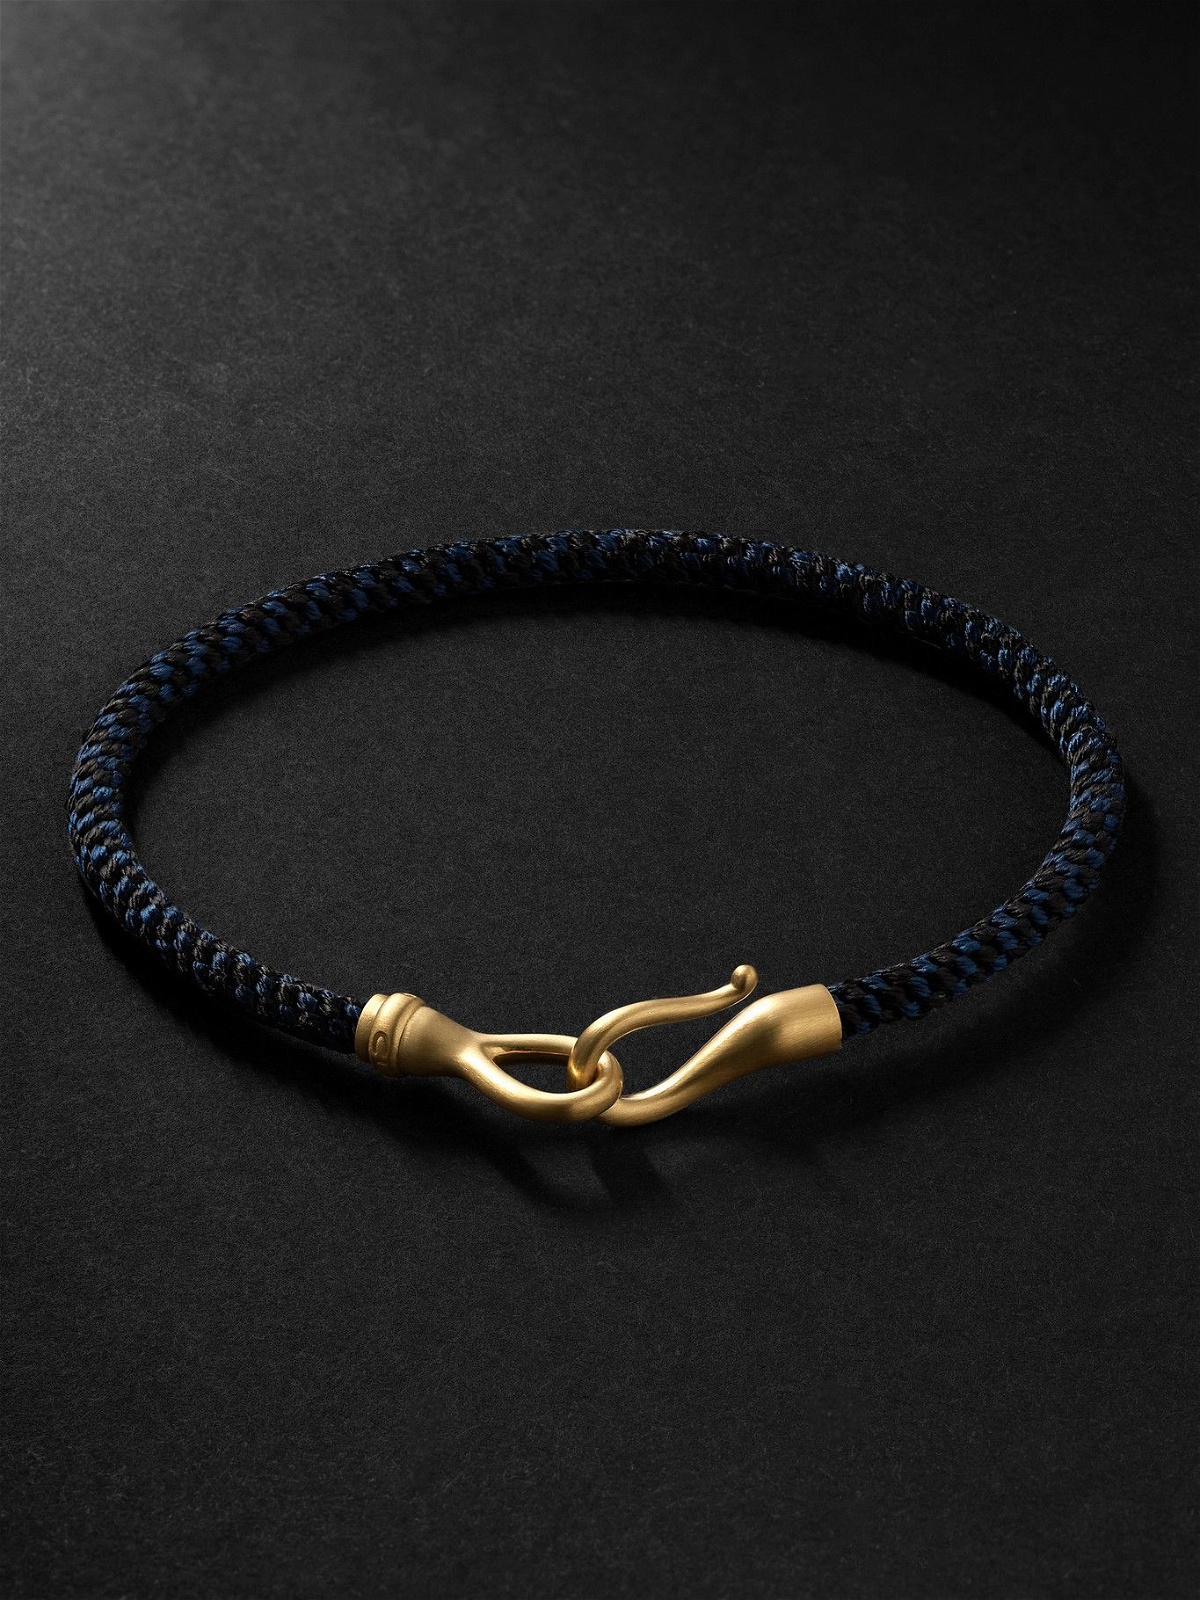 OLE LYNGGAARD COPENHAGEN Life Gold, Turquoise and Cord Bracelet for Men |  Cord bracelets, Bracelets for men, Fine jewelry bracelets